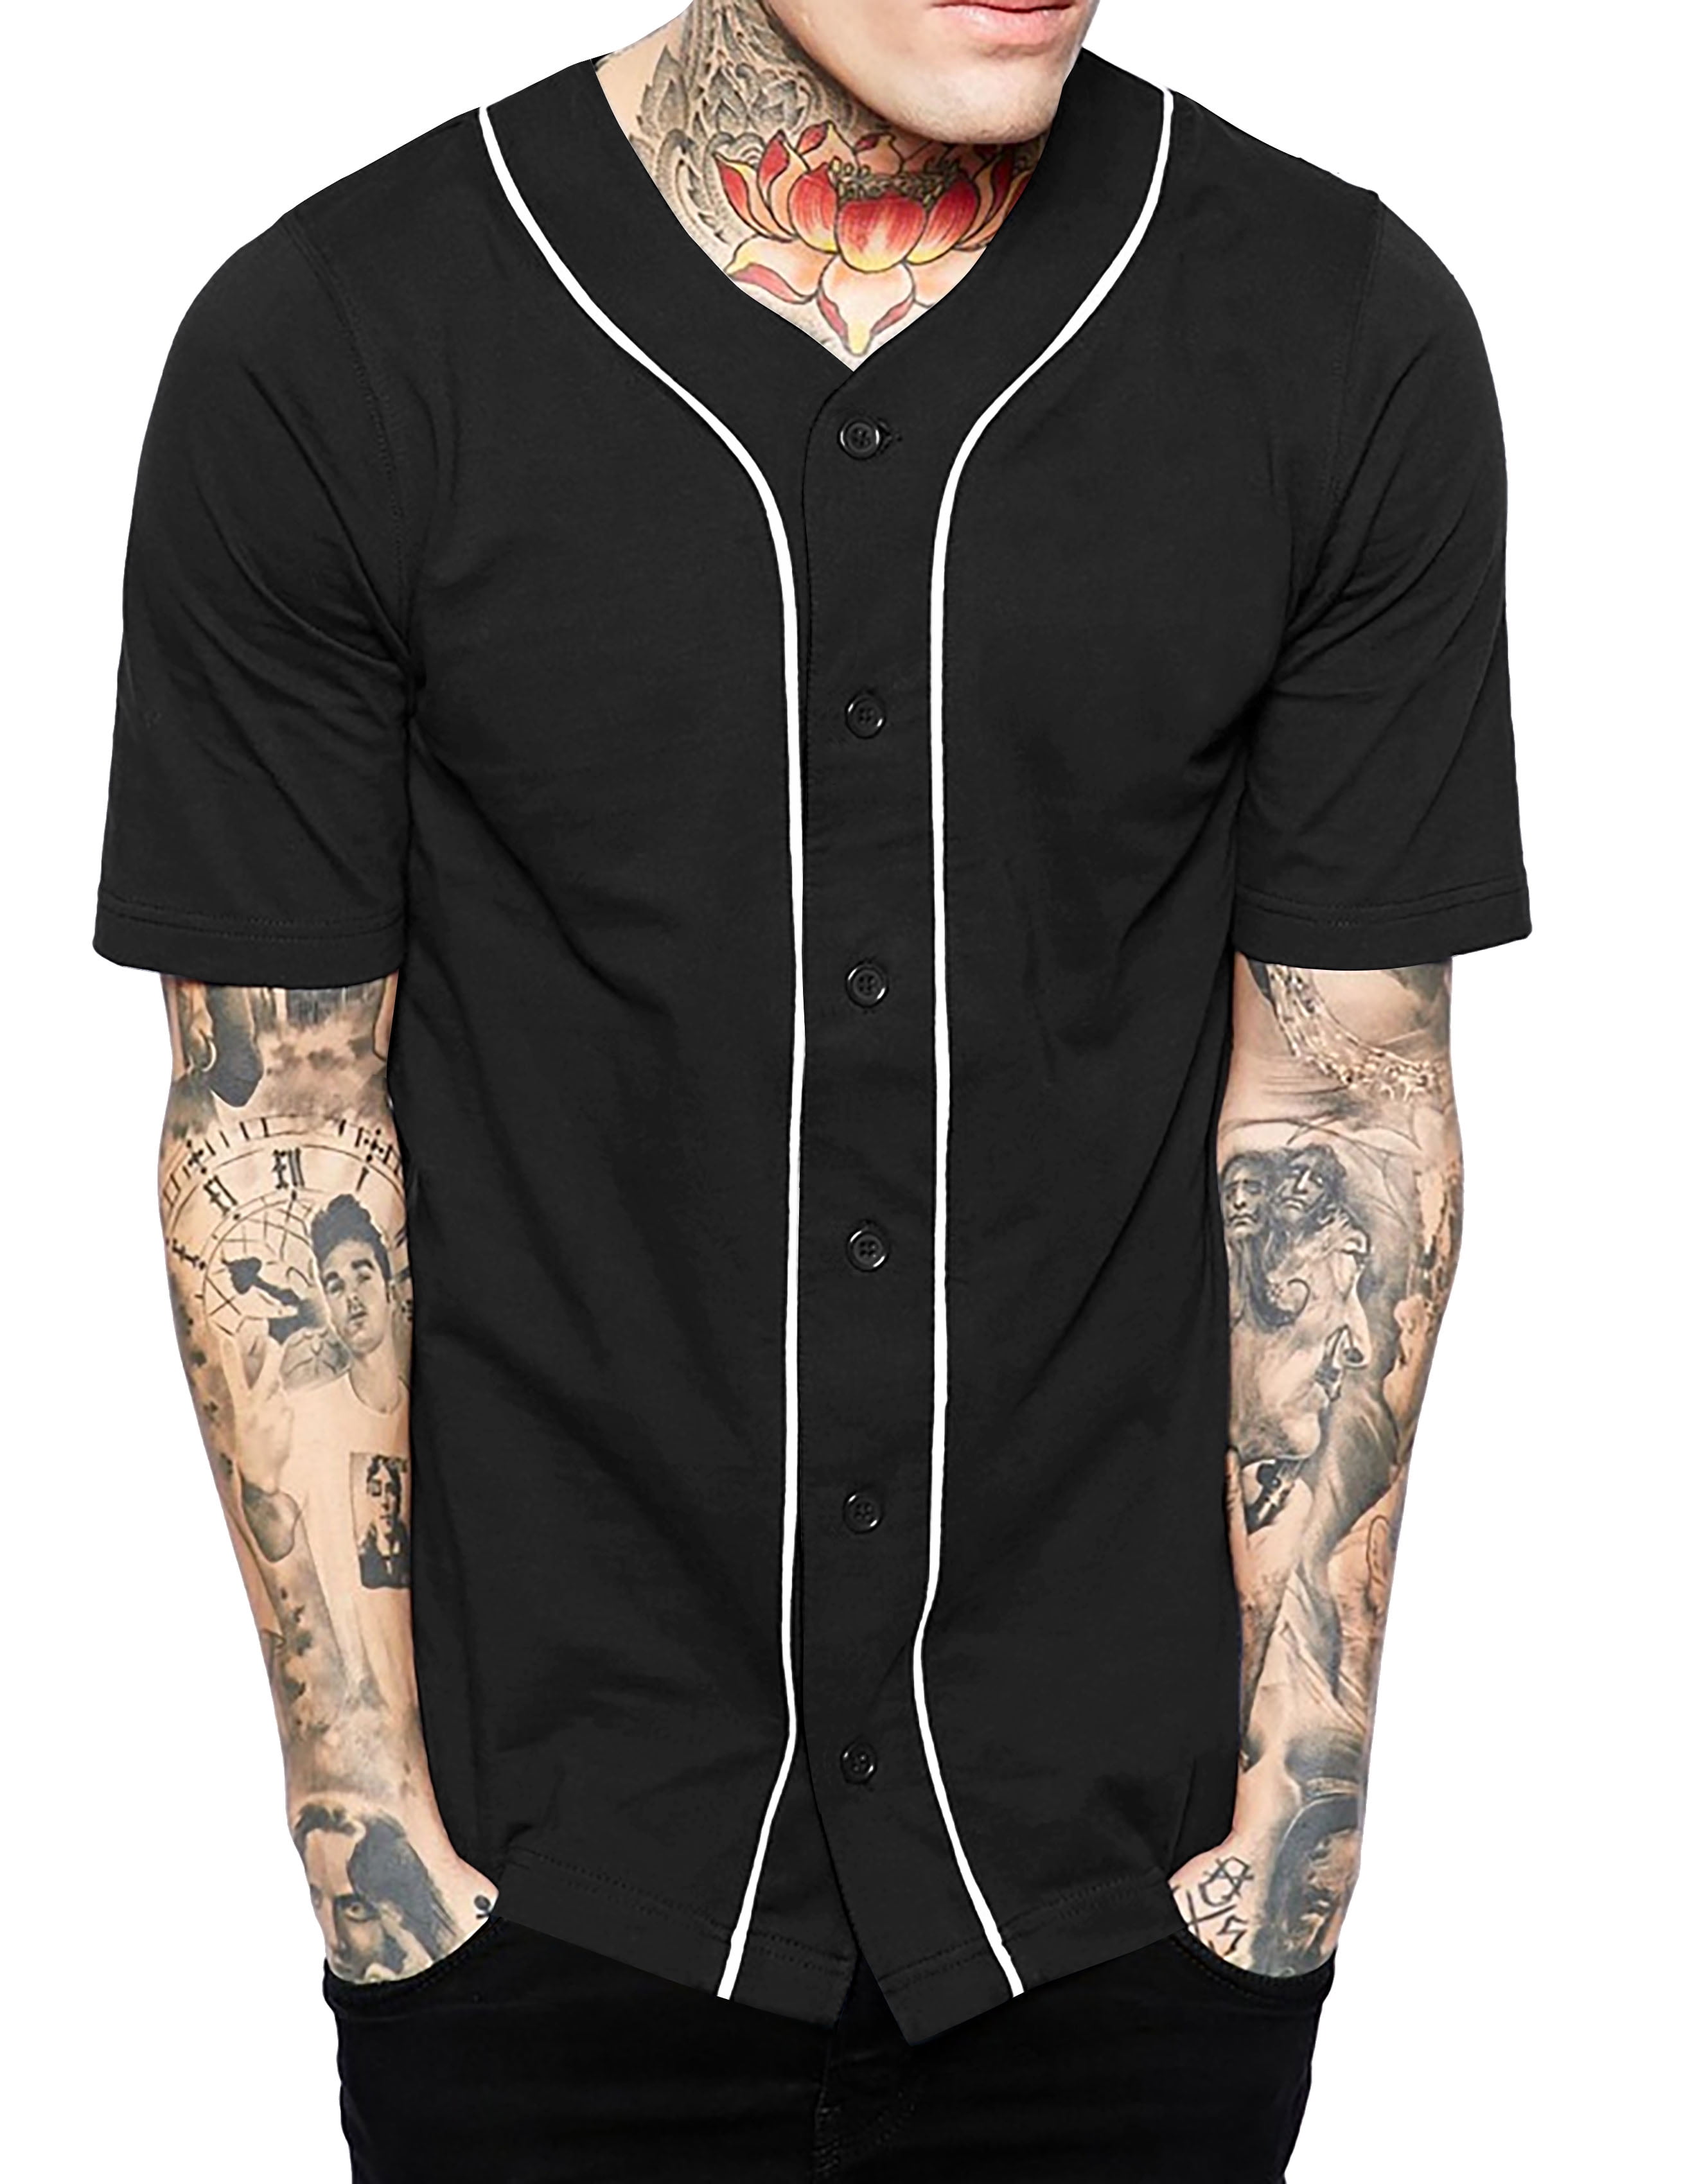 baseball jersey button down shirt 